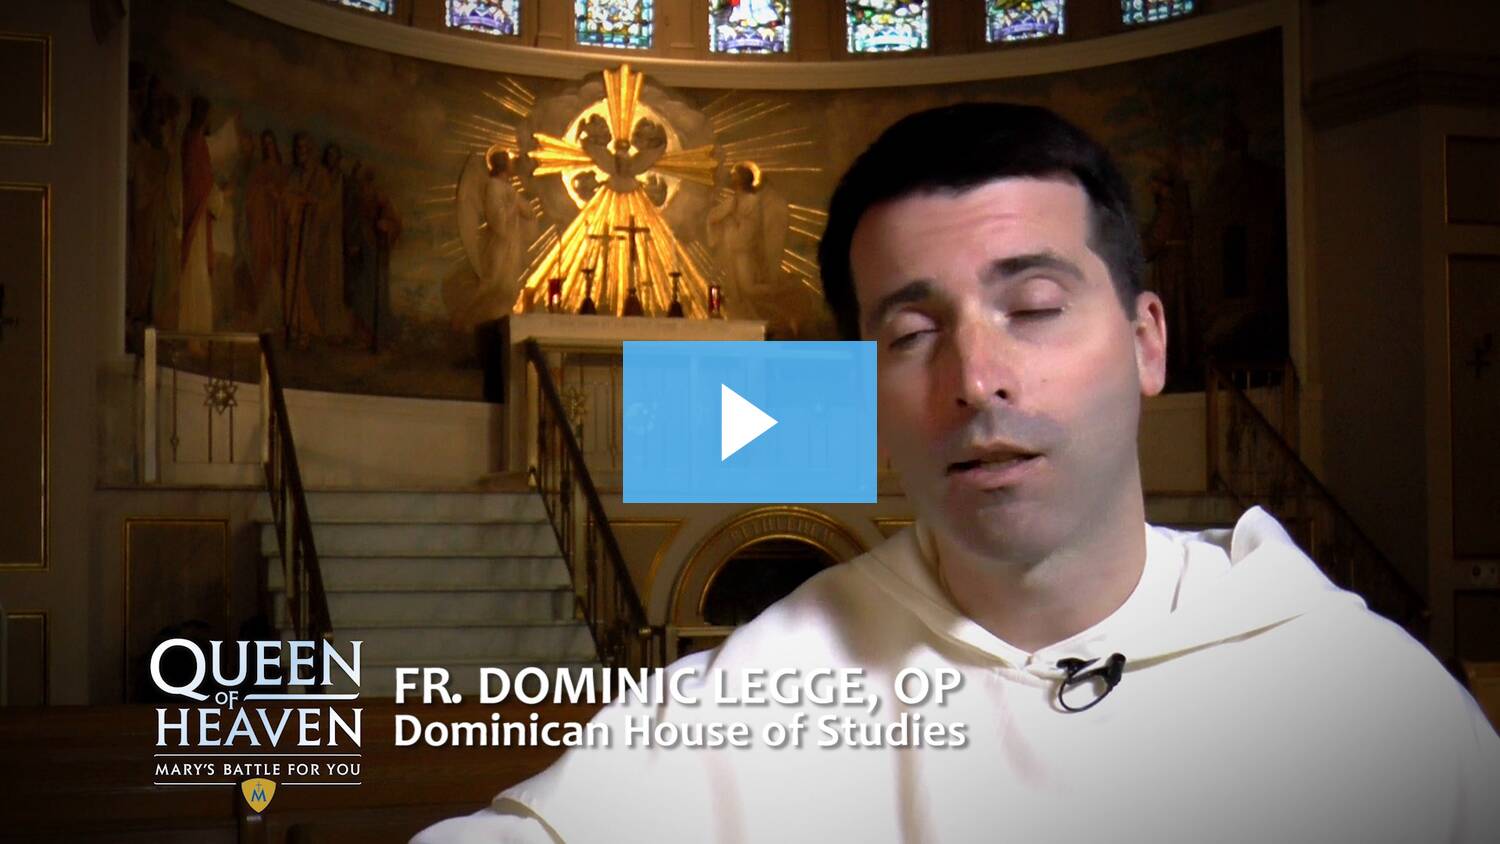 Fr. Dominic Legge